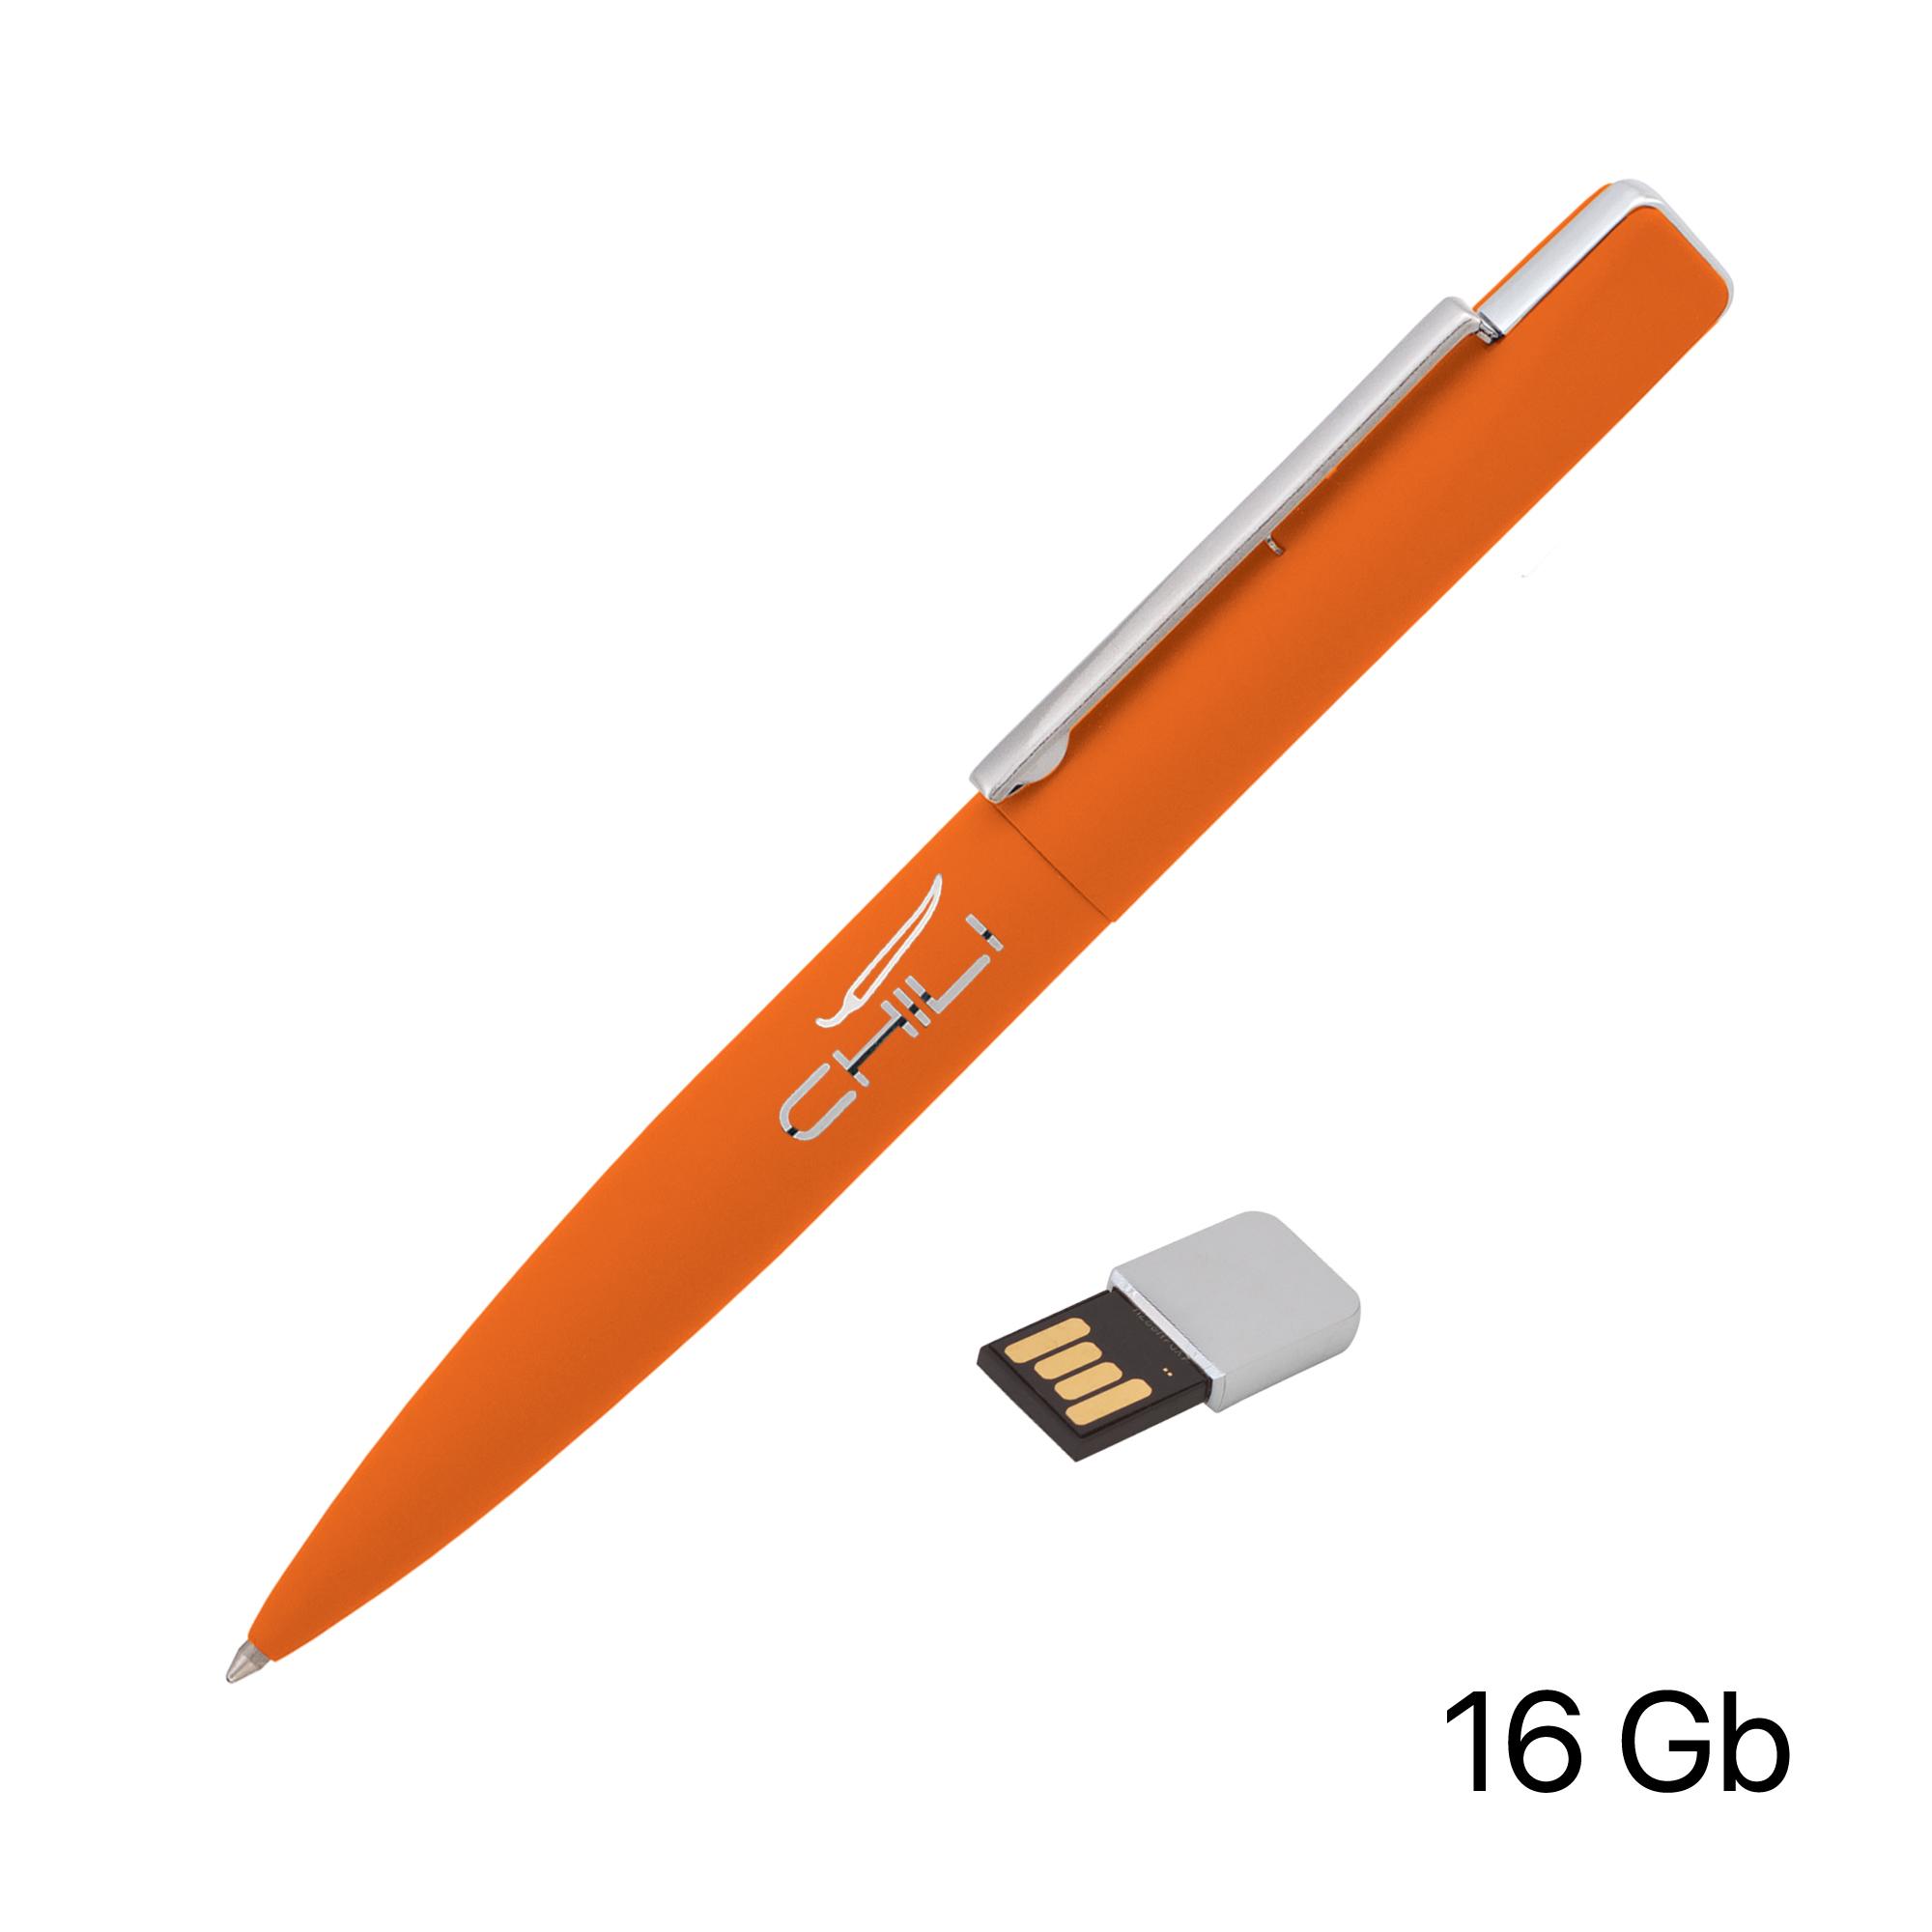 Ручка шариковая "Callisto" с флеш-картой 16Gb, оранжевый, покрытие soft touch, цвет оранжевый